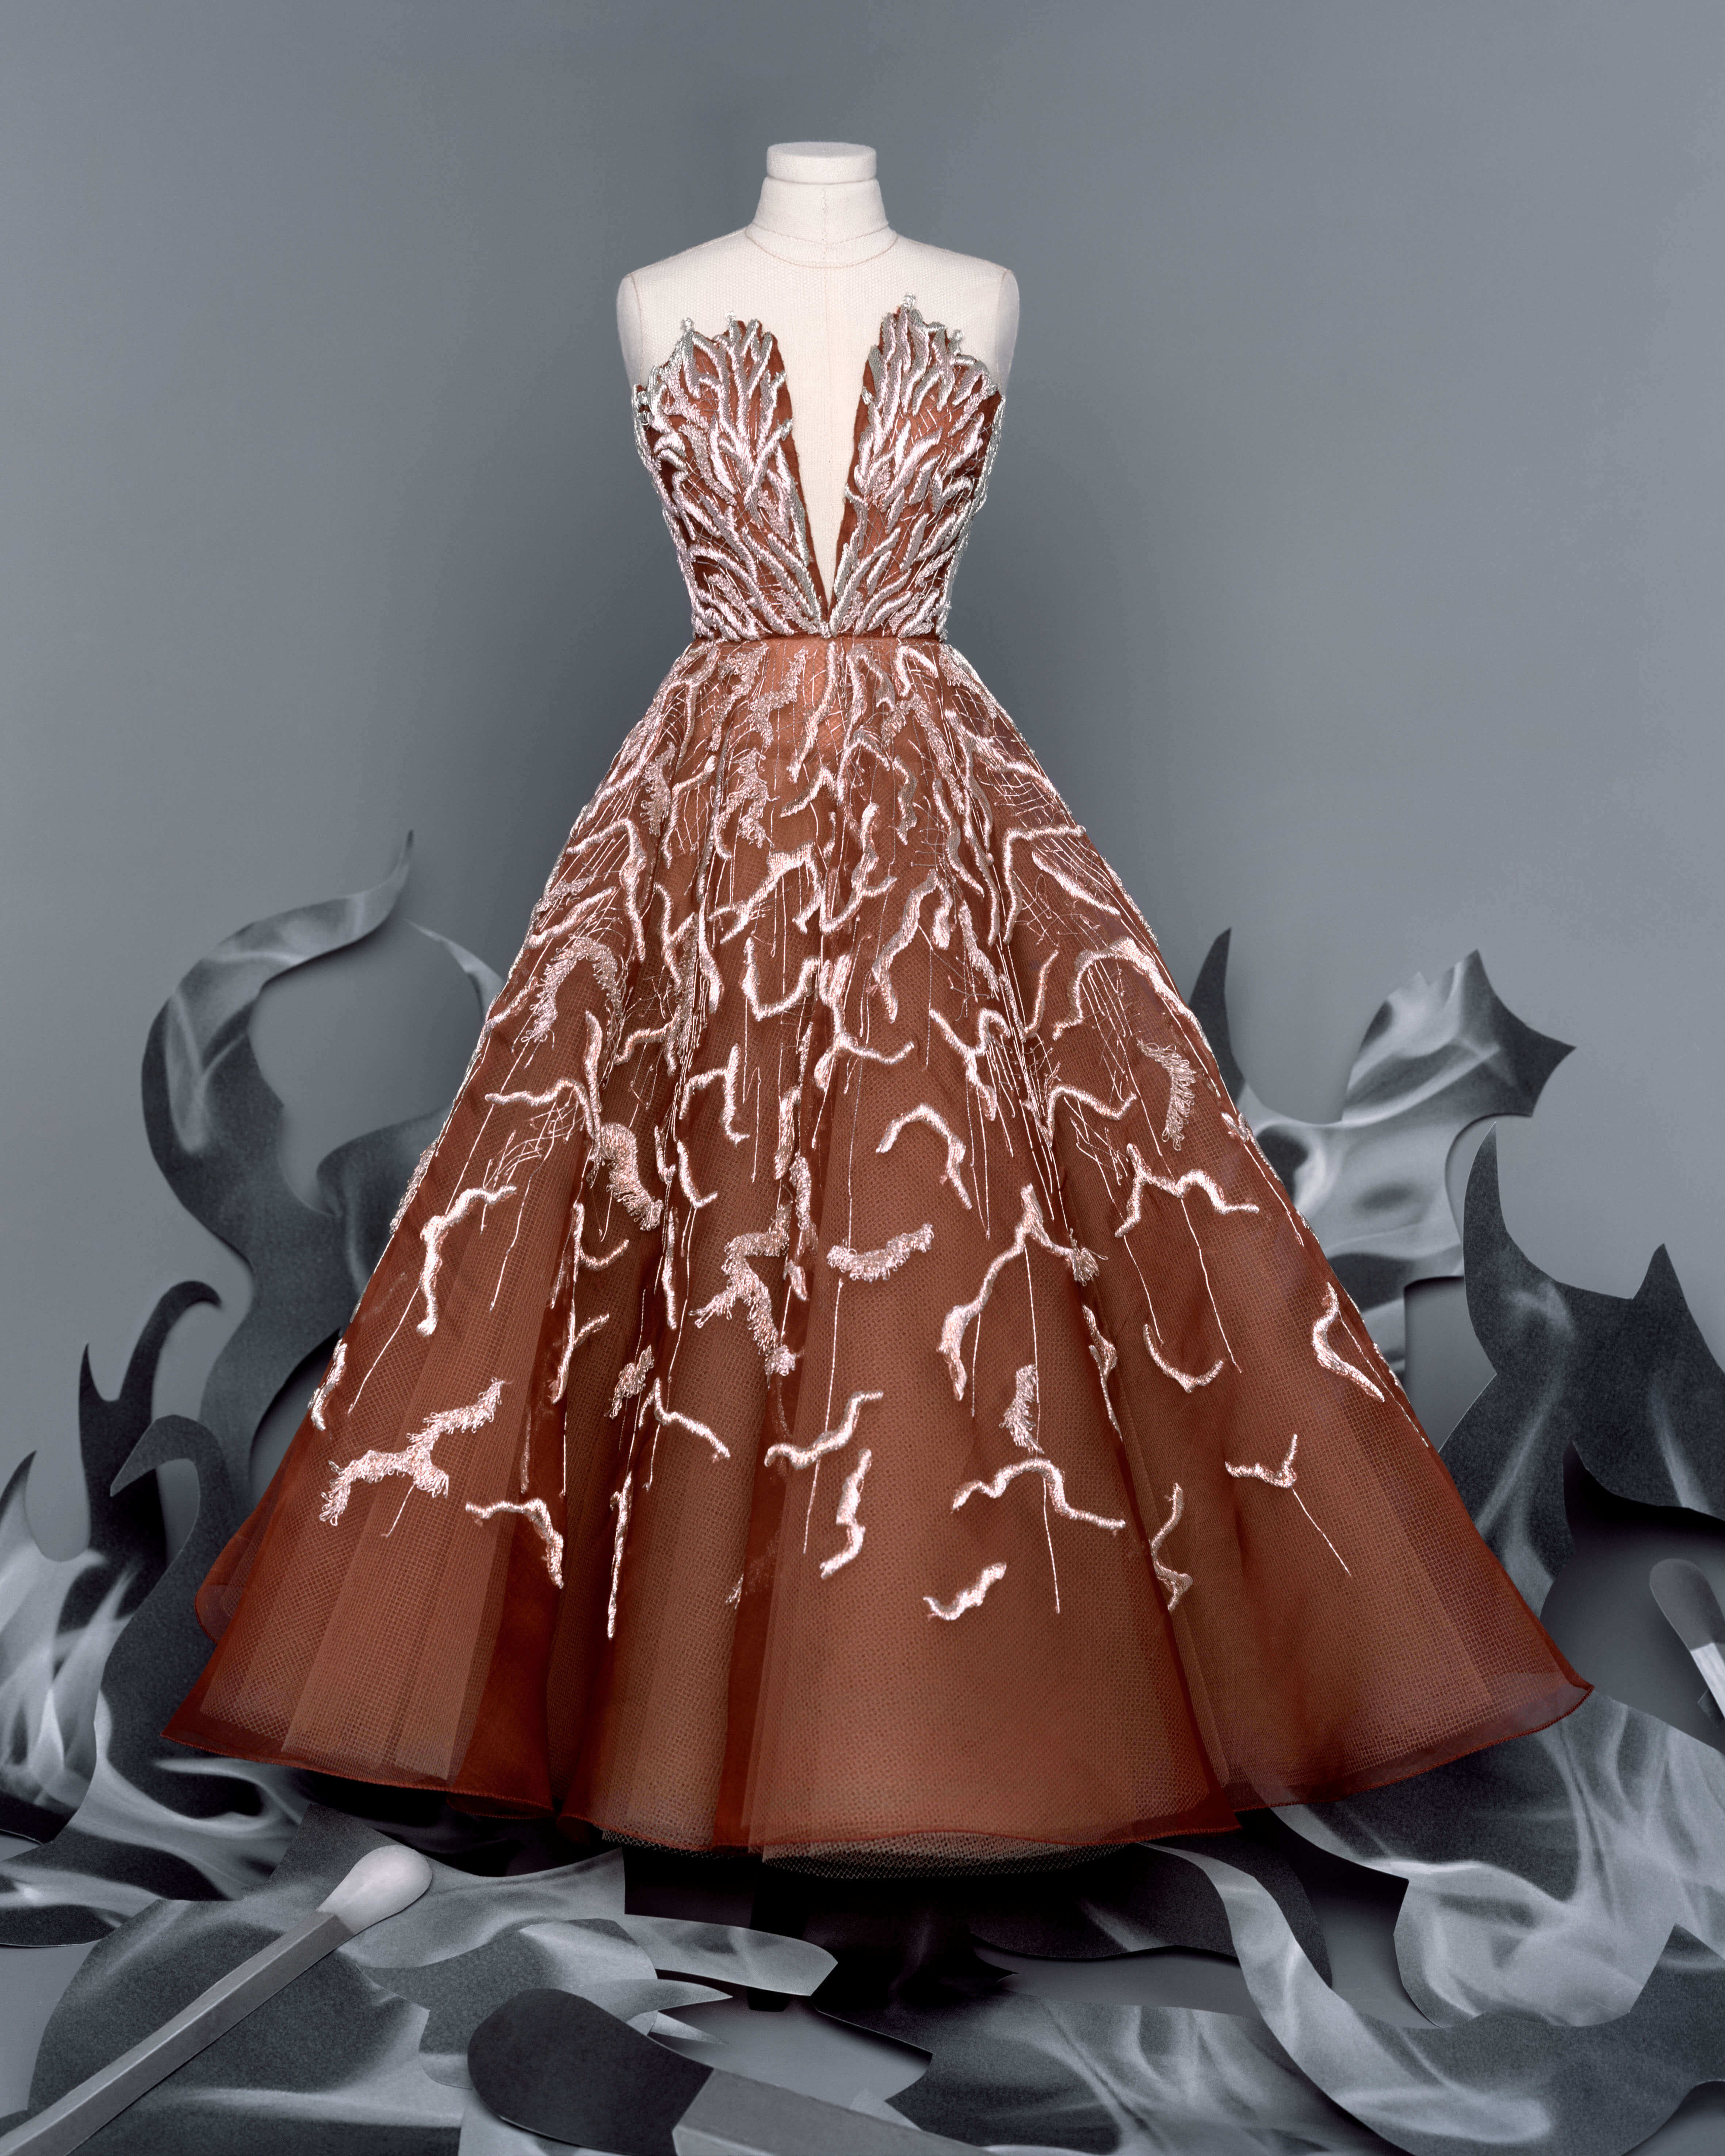 逆境中勇敢迎擊疫情！Dior迷你版高級訂製服_背後用意暗藏玄機5.jpg